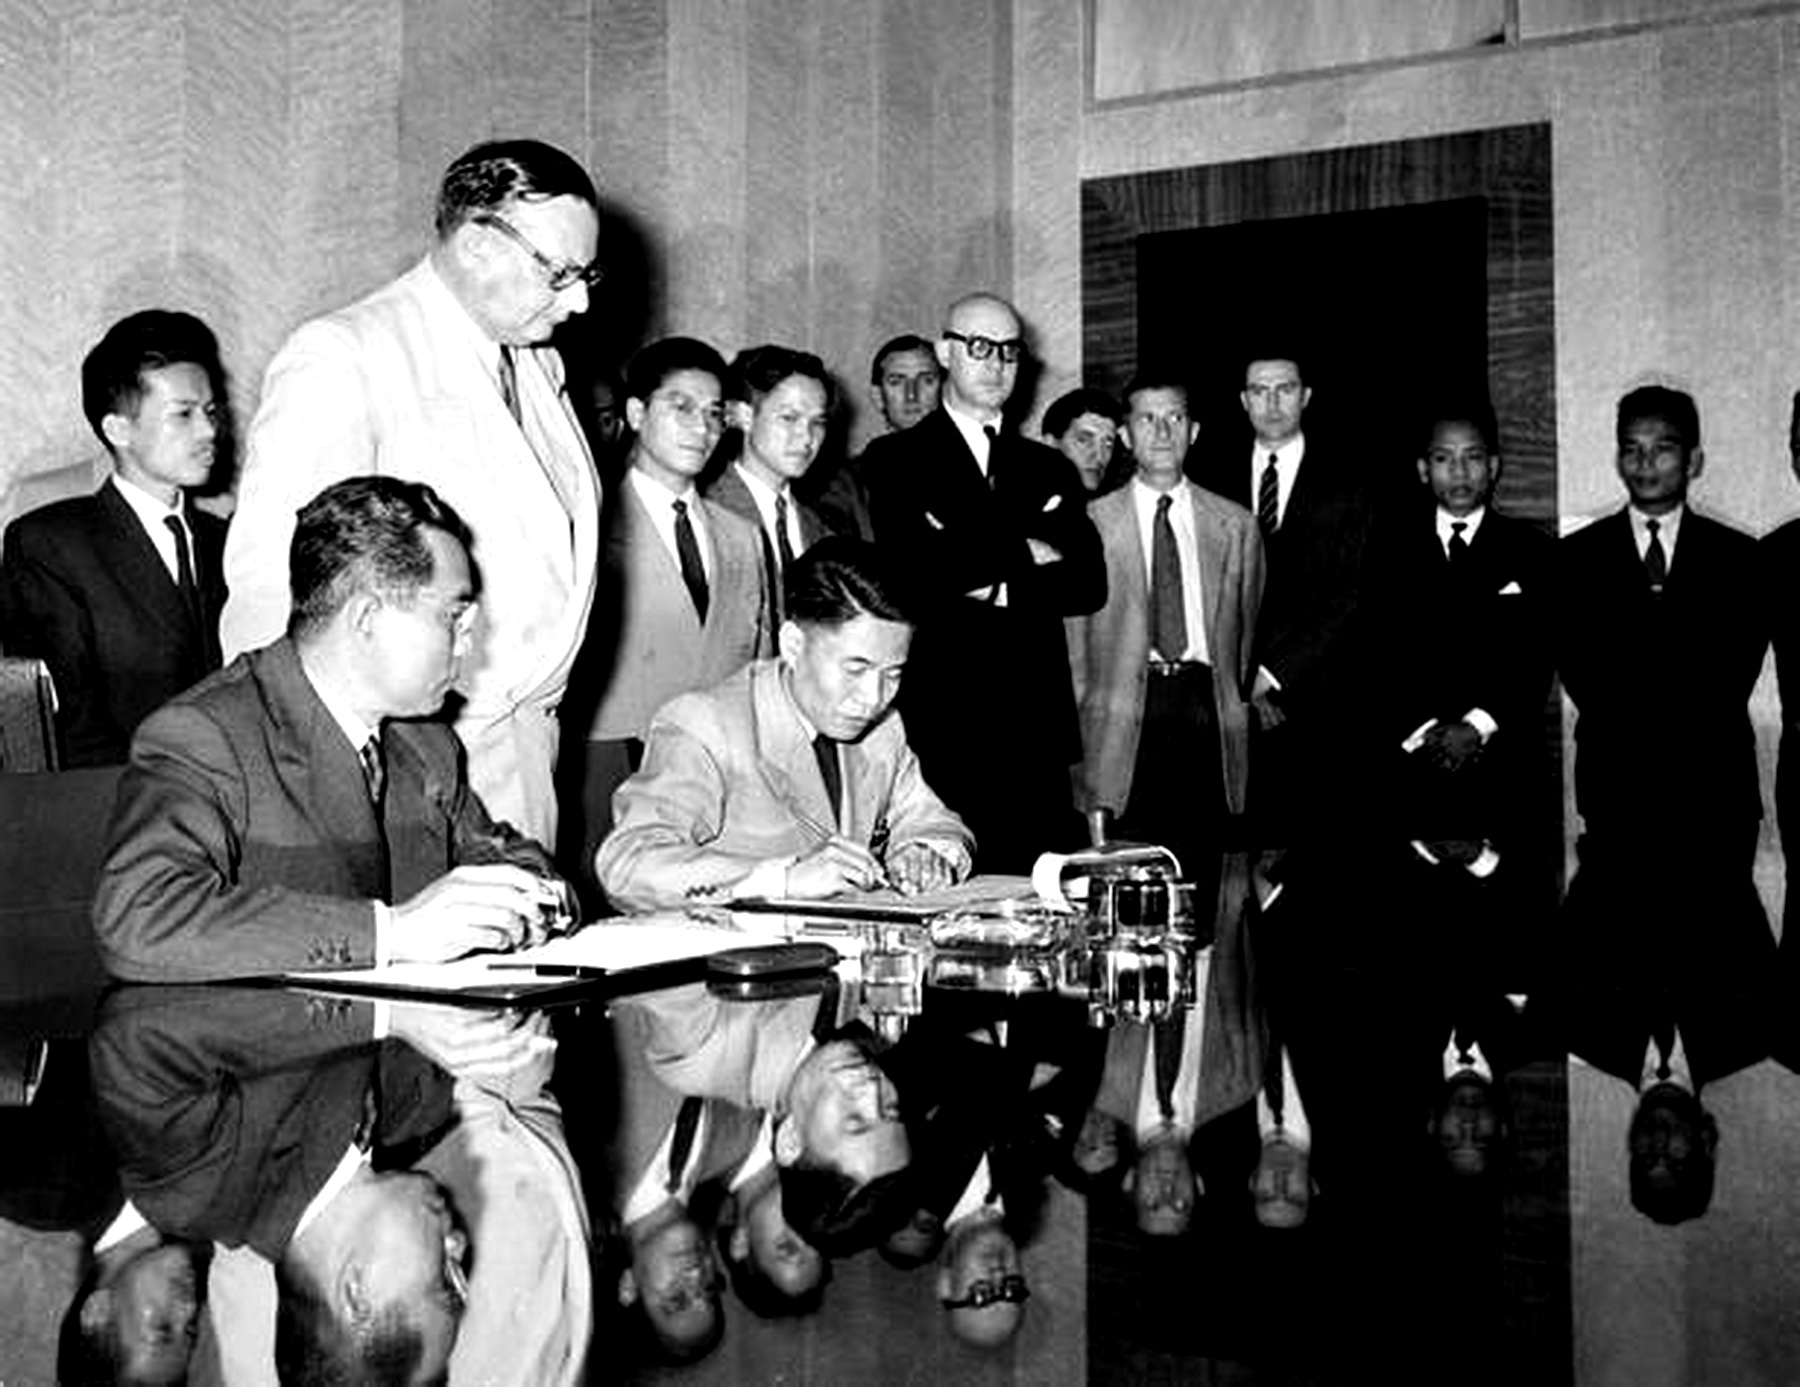 Ngày 20/7/1954, Thứ trưởng Bộ Quốc phòng Tạ Quang Bửu thay mặt Chính phủ và Bộ Tổng tư lệnh Quân đội nhân dân Việt Nam ký Hiệp định đình chiến ở Việt Nam. Ngay sau đó, Hiệp định đình chiến ở Lào và Campuchia cũng được ký kết. (Nguồn: Tư liệu TTXVN)